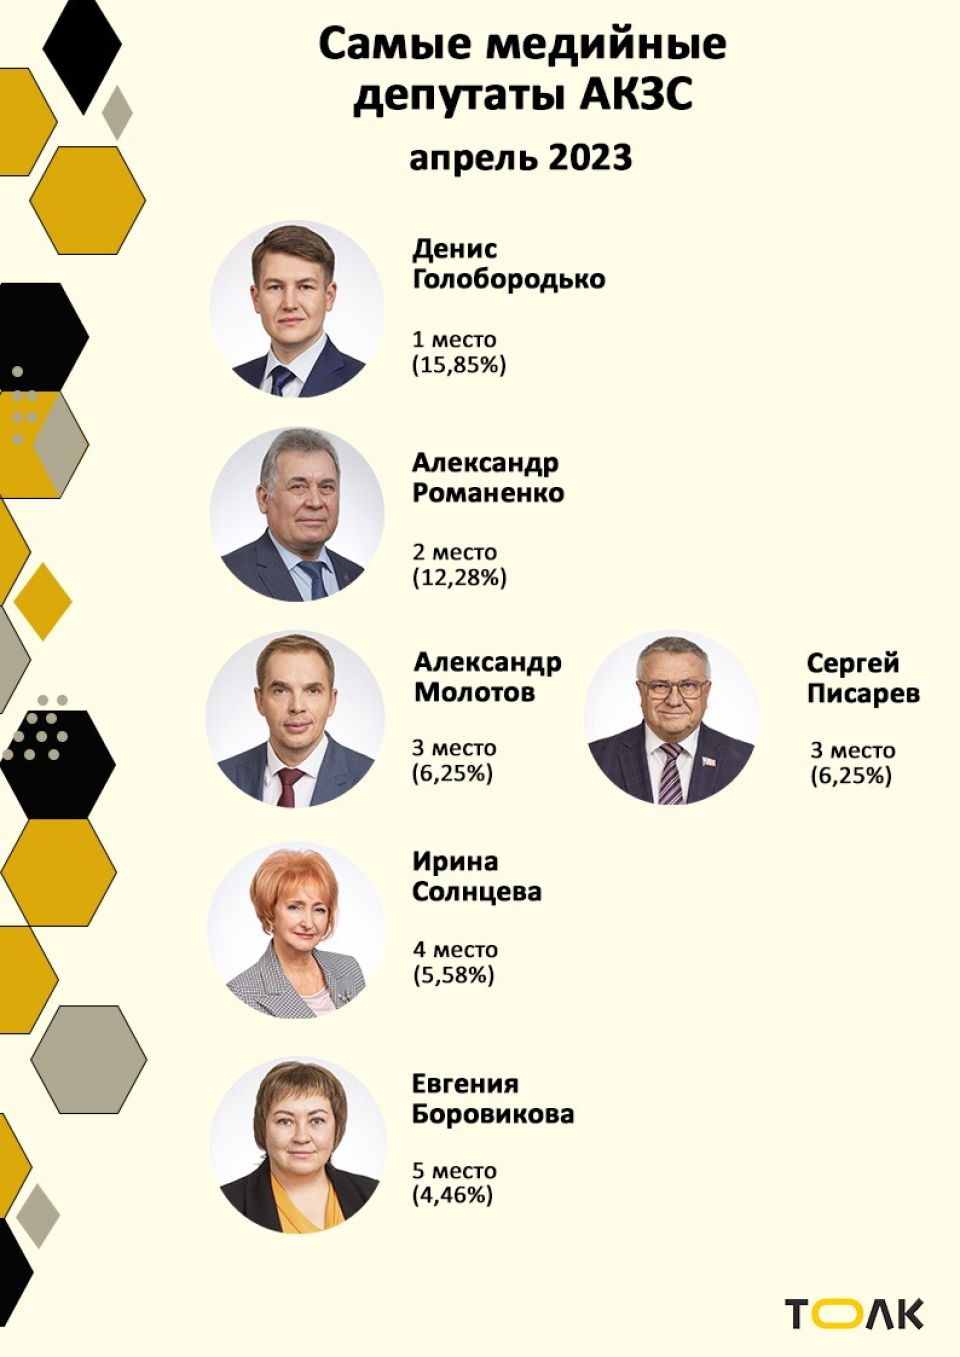 Рейтинг медийности депутатов АКЗС в марте 2023 года